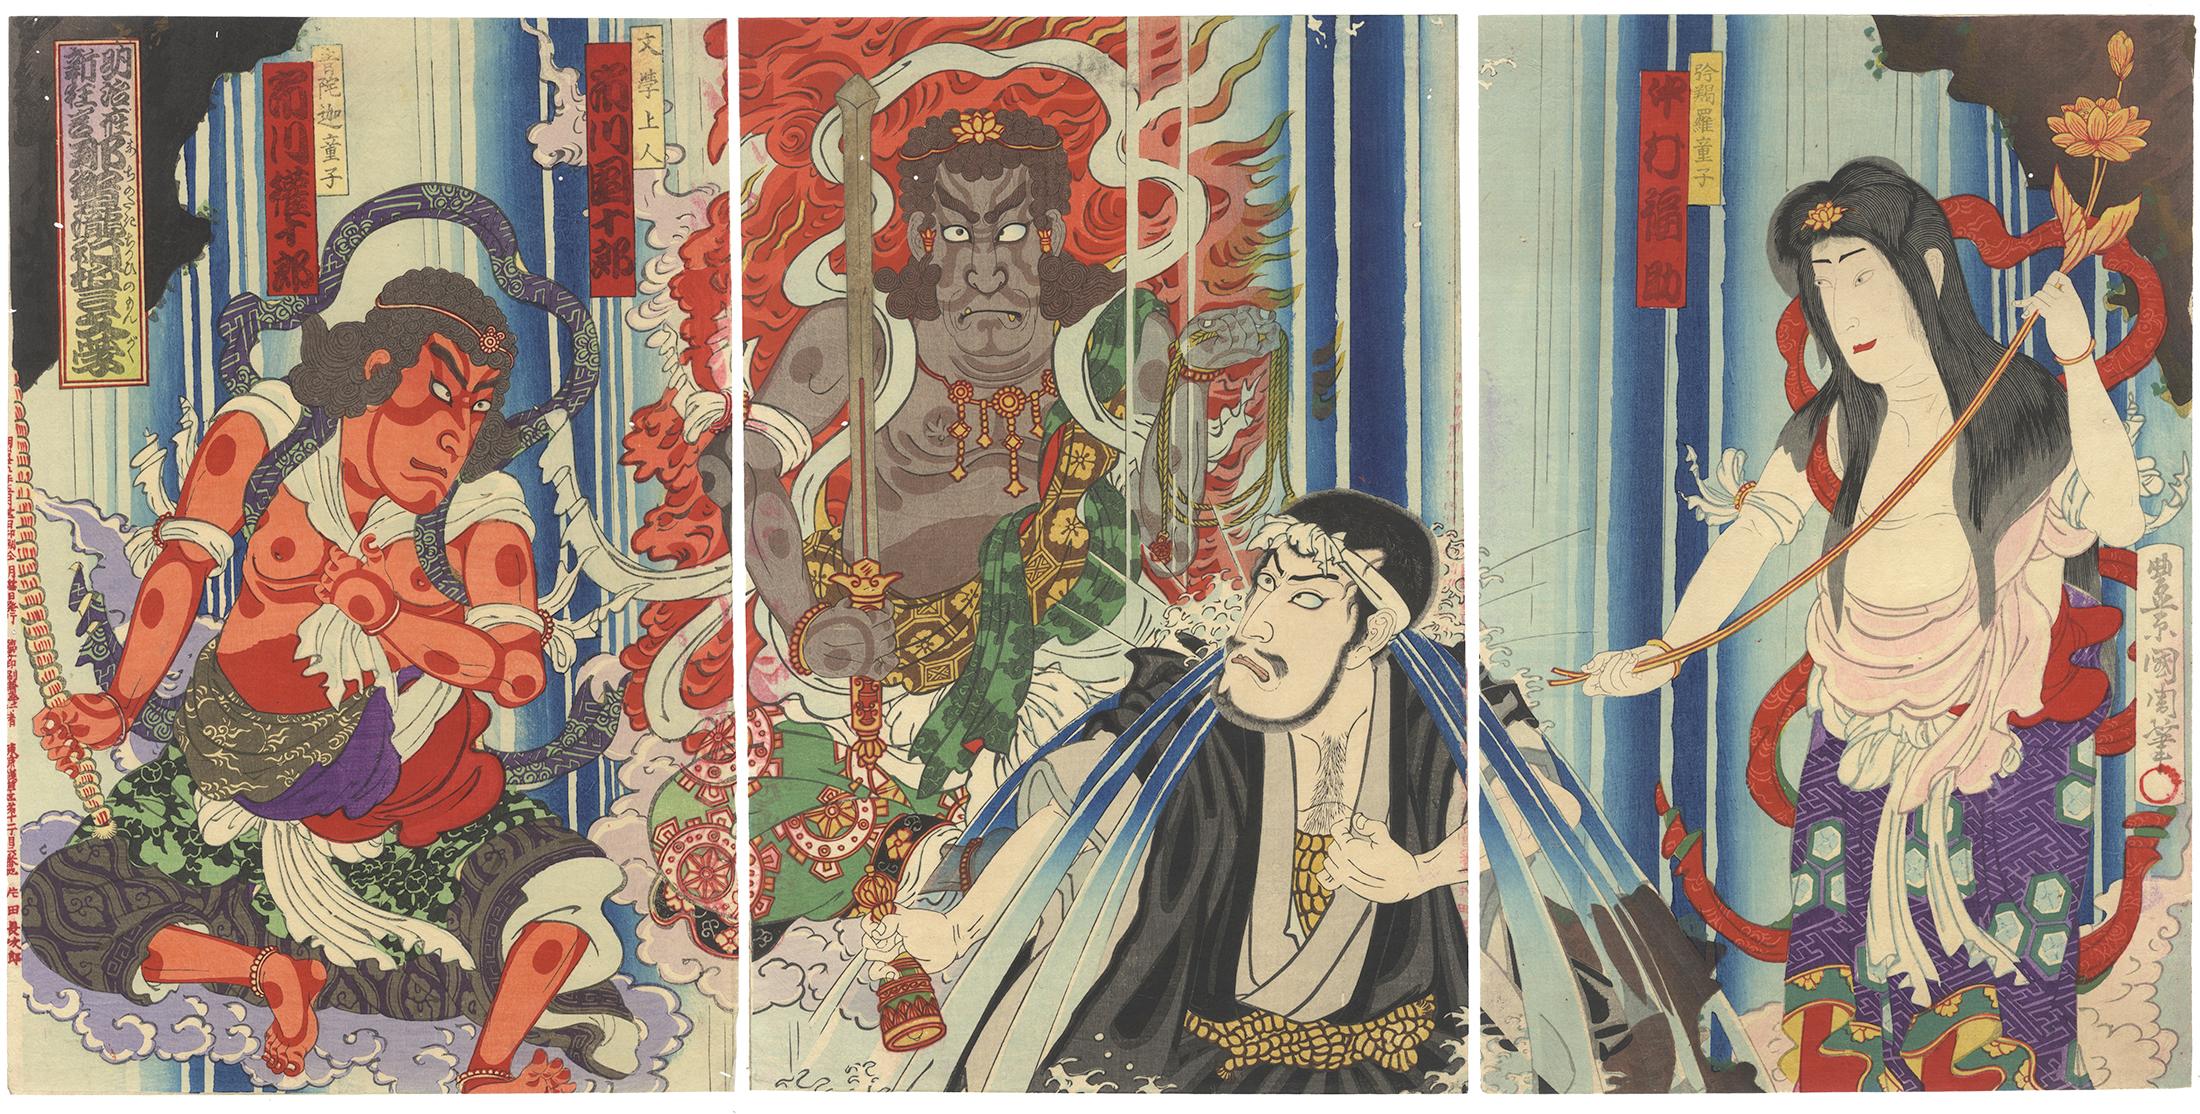 Toyohara Kunichika Portrait Print - Kunichika Toyohara, Kabuki, Original Japanese Woodblock Print, Waterfall, Meiji